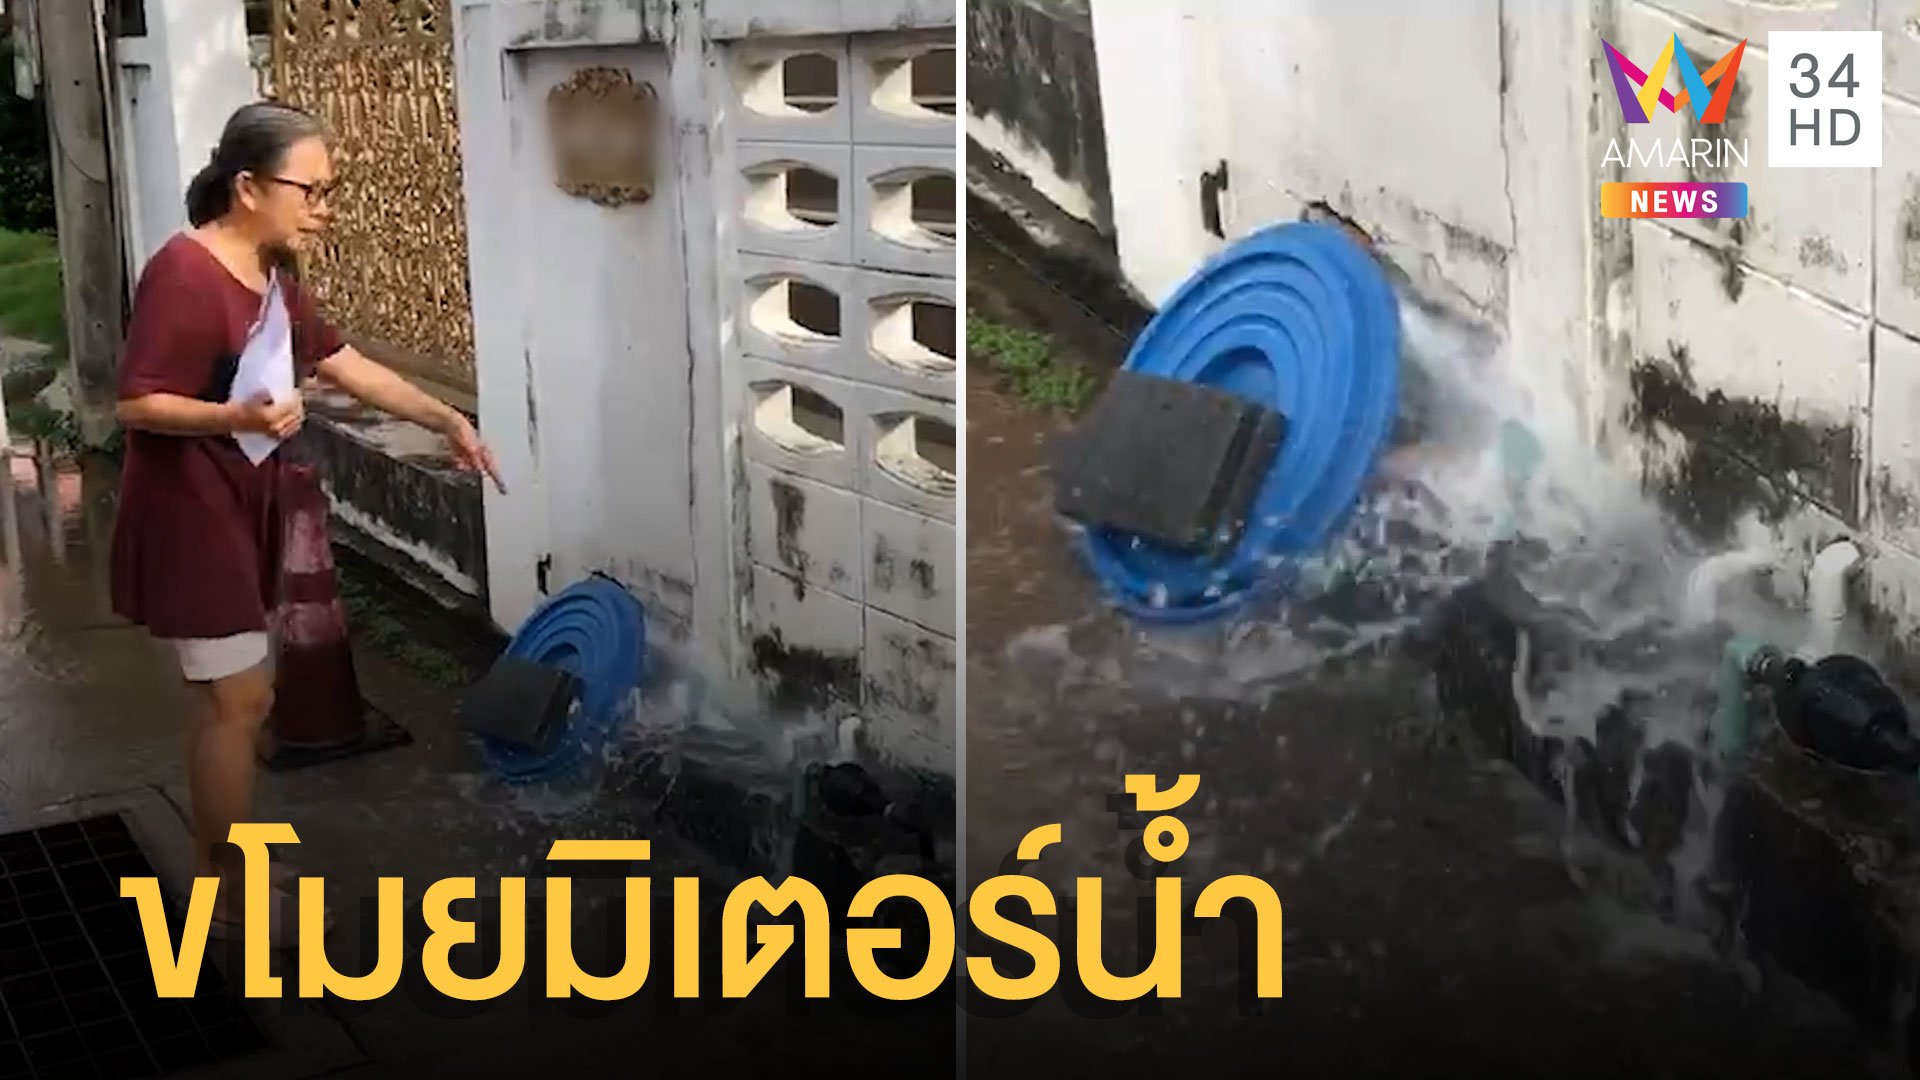 โจรแสบมาก ขโมยมิเตอร์น้ำปล่อยน้ำท่วมถนนนอง  | ข่าวเที่ยงอมรินทร์ | 30 พ.ค. 65 | AMARIN TVHD34